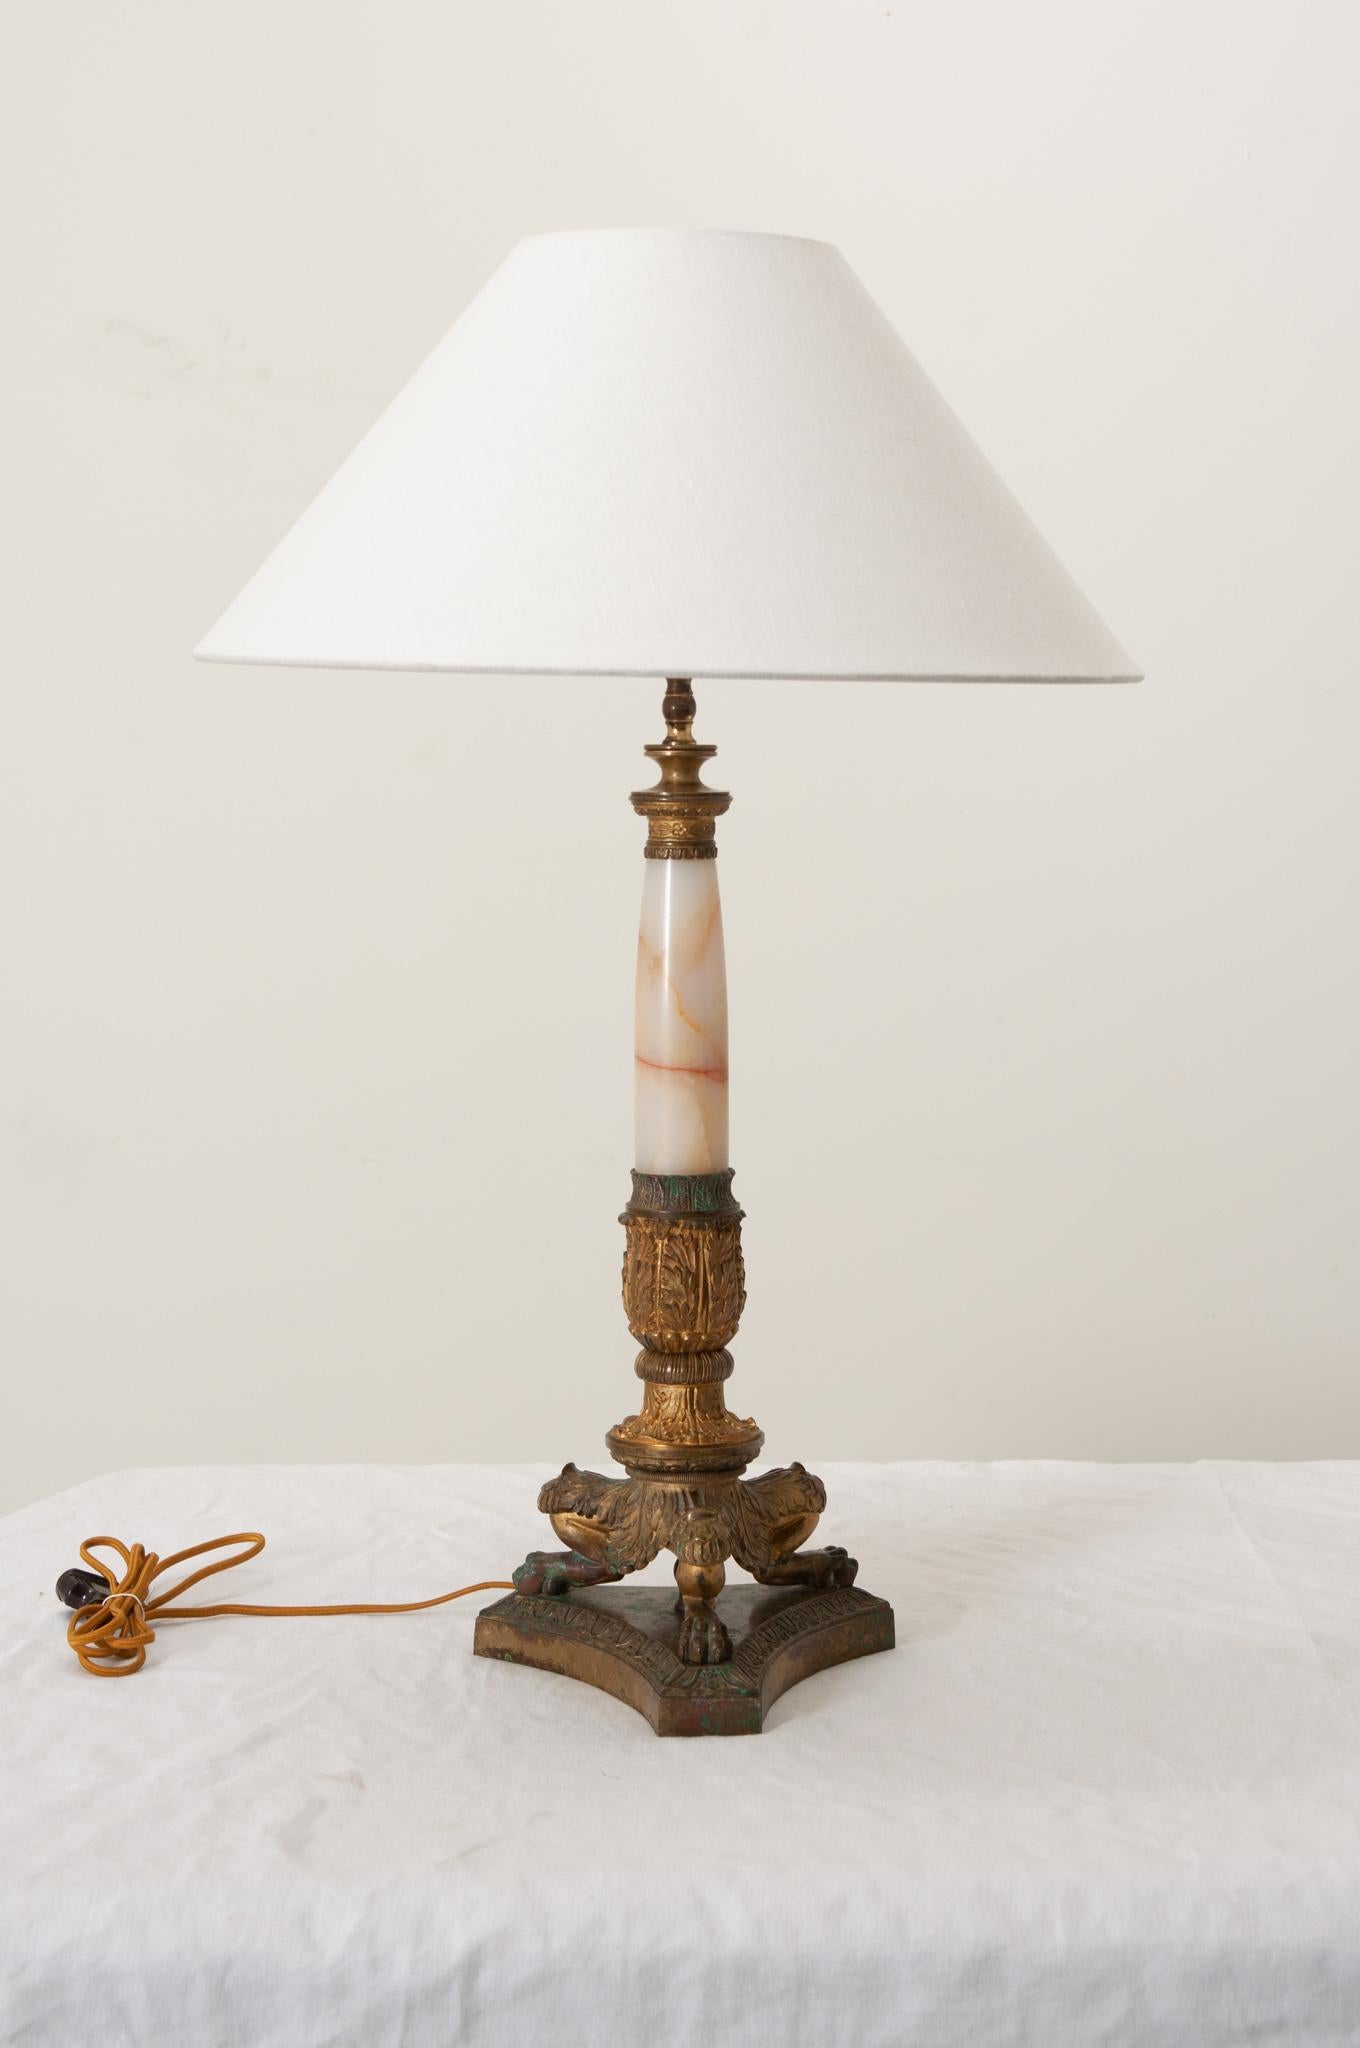 Lampe de table à une seule lumière de style Empire français du 19e siècle avec un abat-jour contemporain en lin. Elegant avec des designs néoclassiques et présentant une tige effilée en onyx ornée de montures décoratives en laiton, soutenue par une